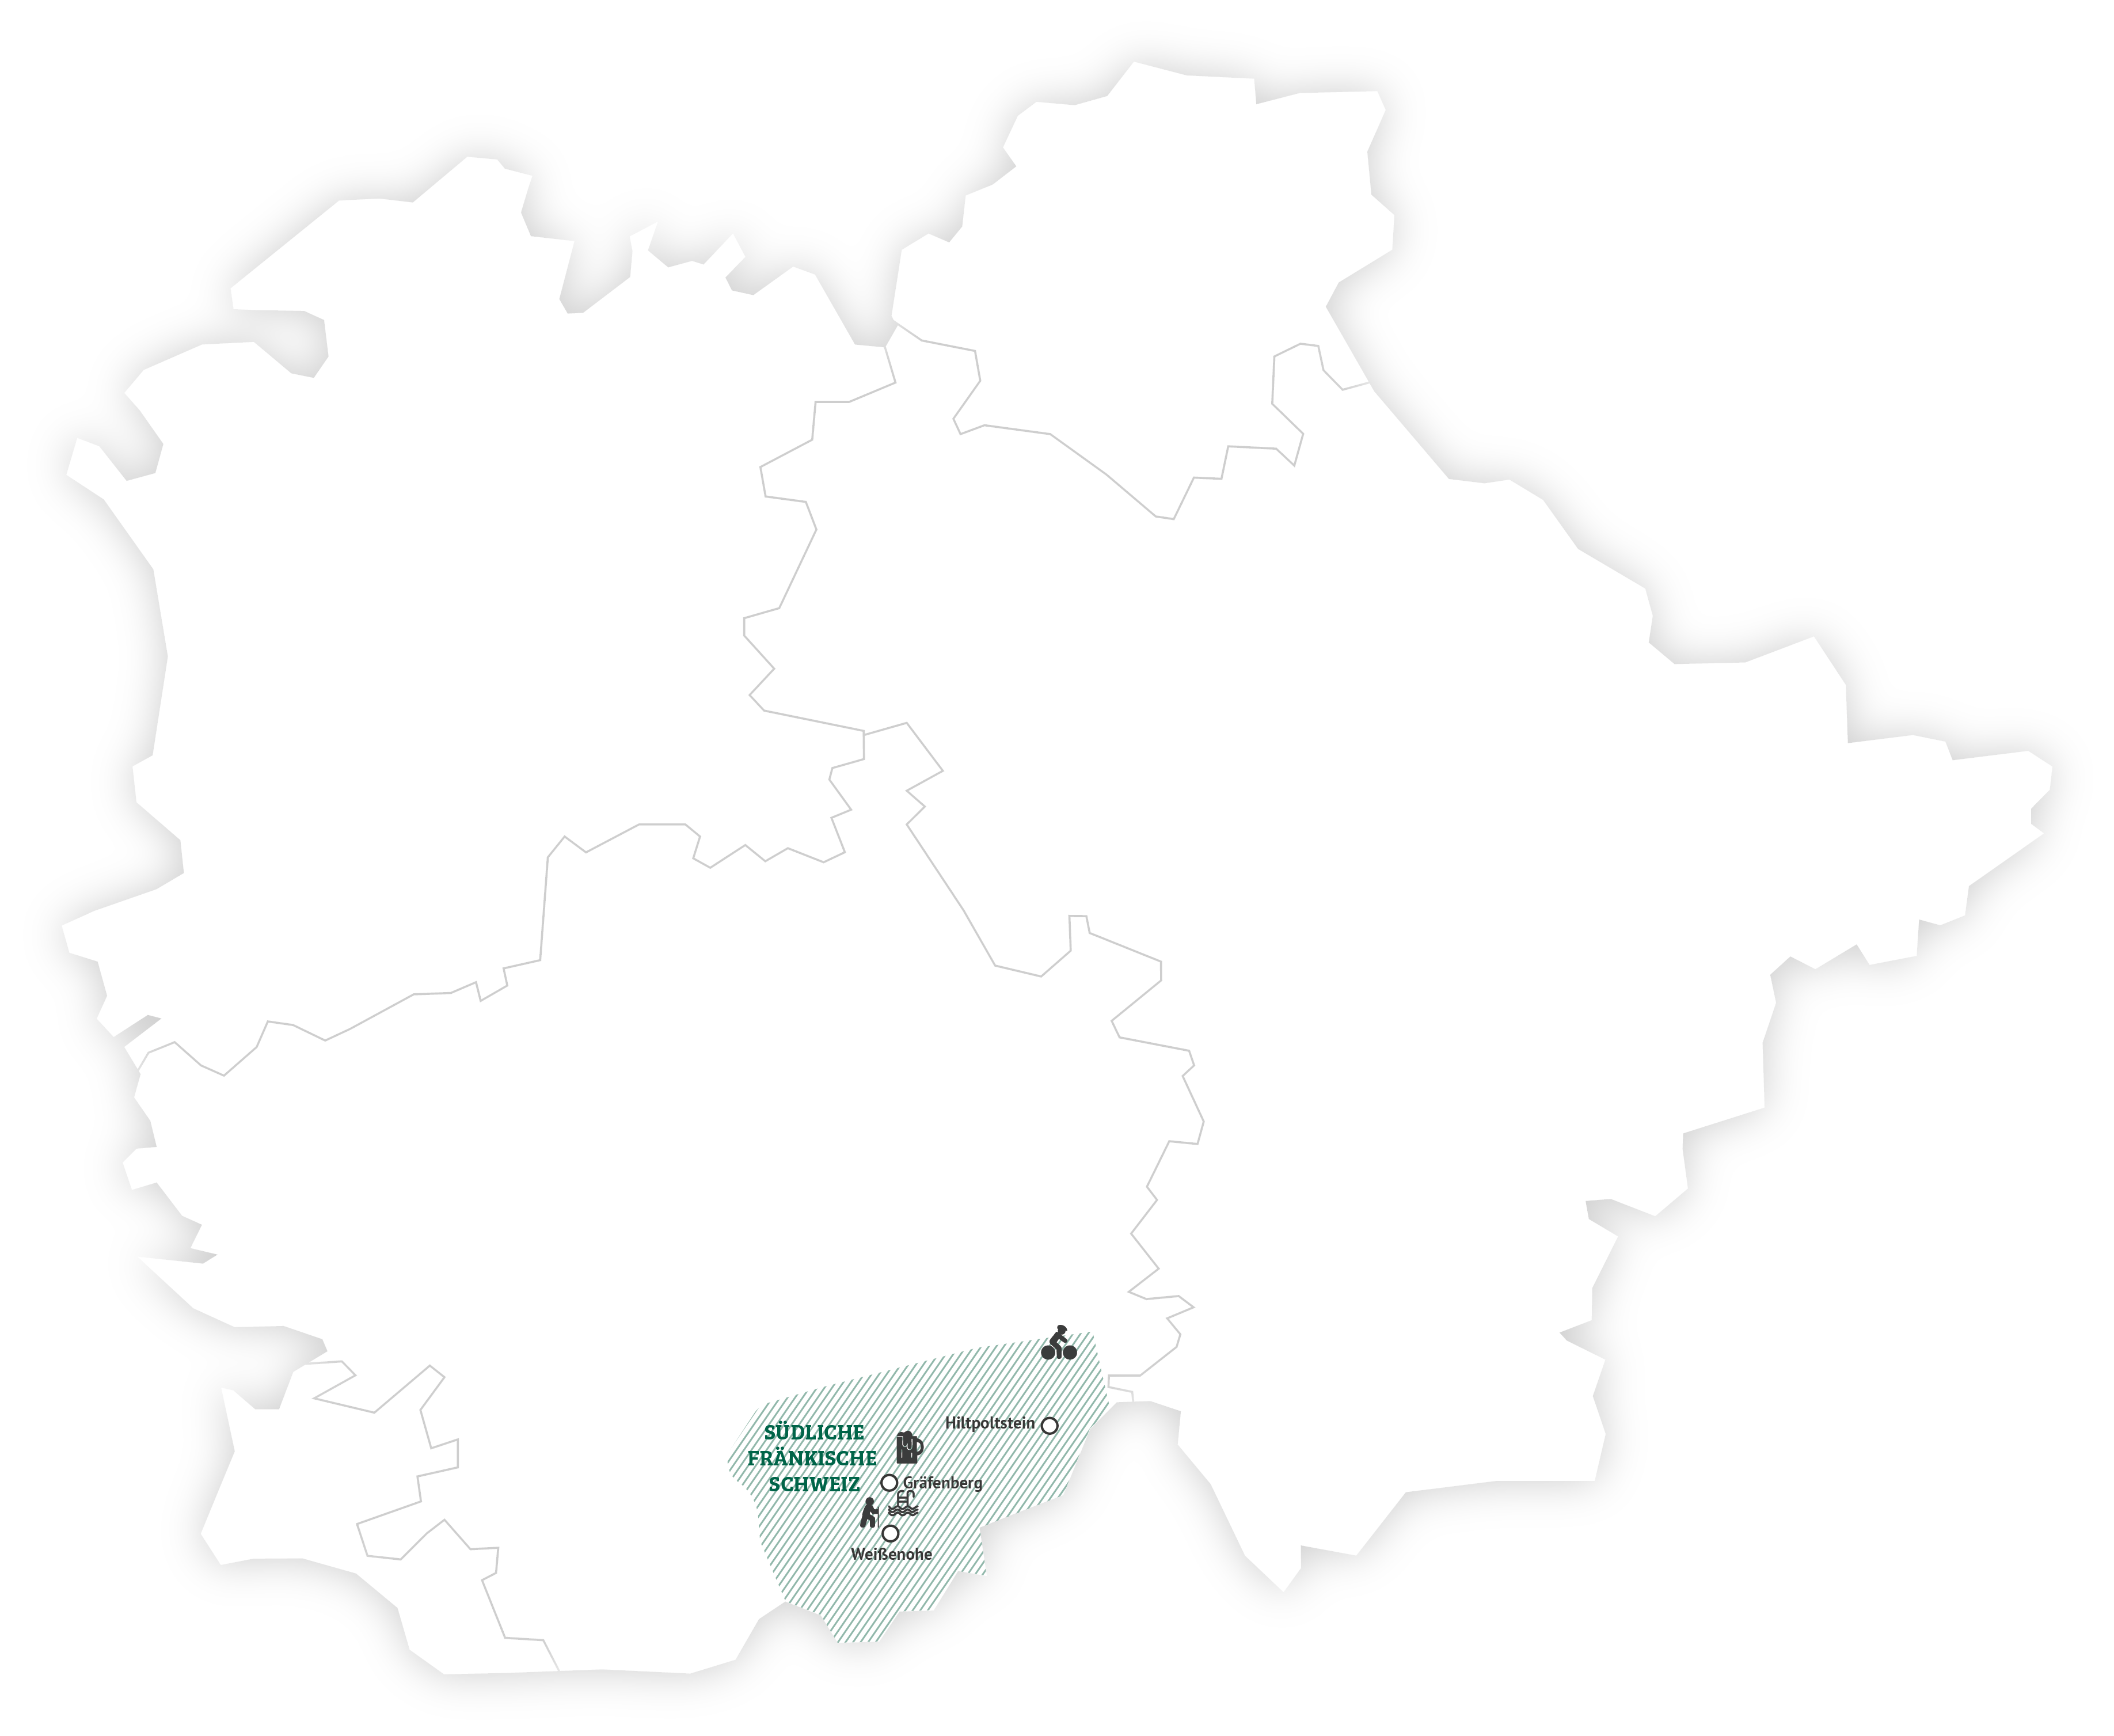 Eine weiß-grüne Übersichtskarte der südlichen Fränkischen Schweiz mit Orten und Flüssen.